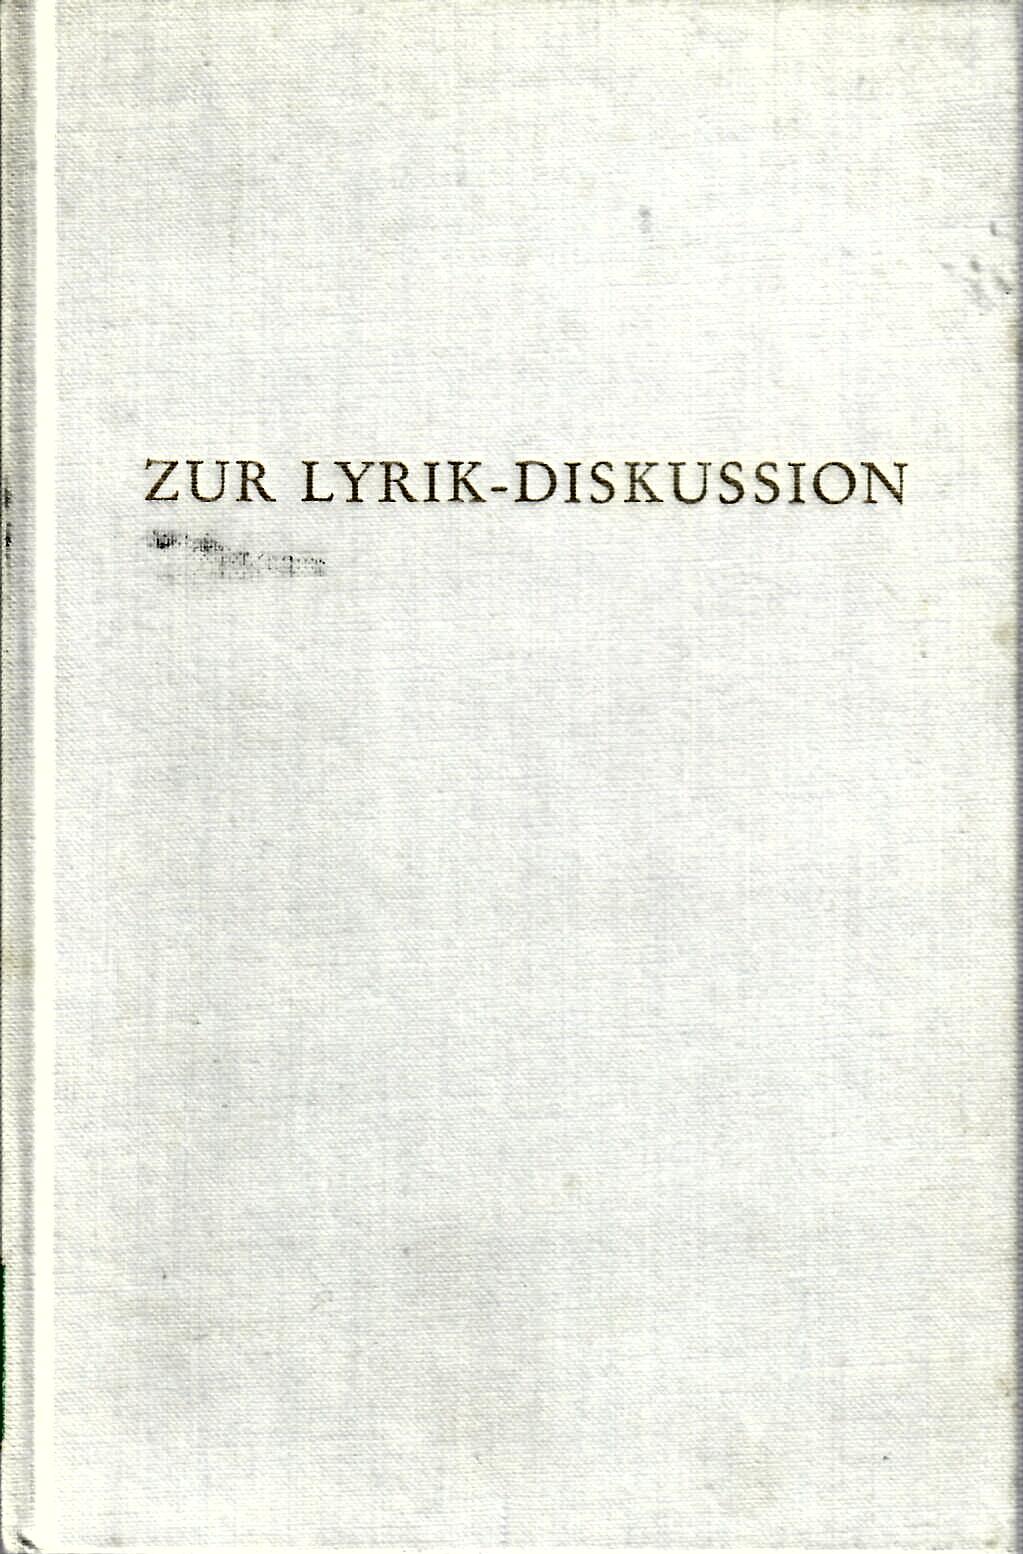 GRIMM, Reinhold (Hg.)   : Zur Lyrik-Diskussion.In: Wege der Forschung. Band 111 (CXI) Poesie, Dichtung, Lyrik, Sagen